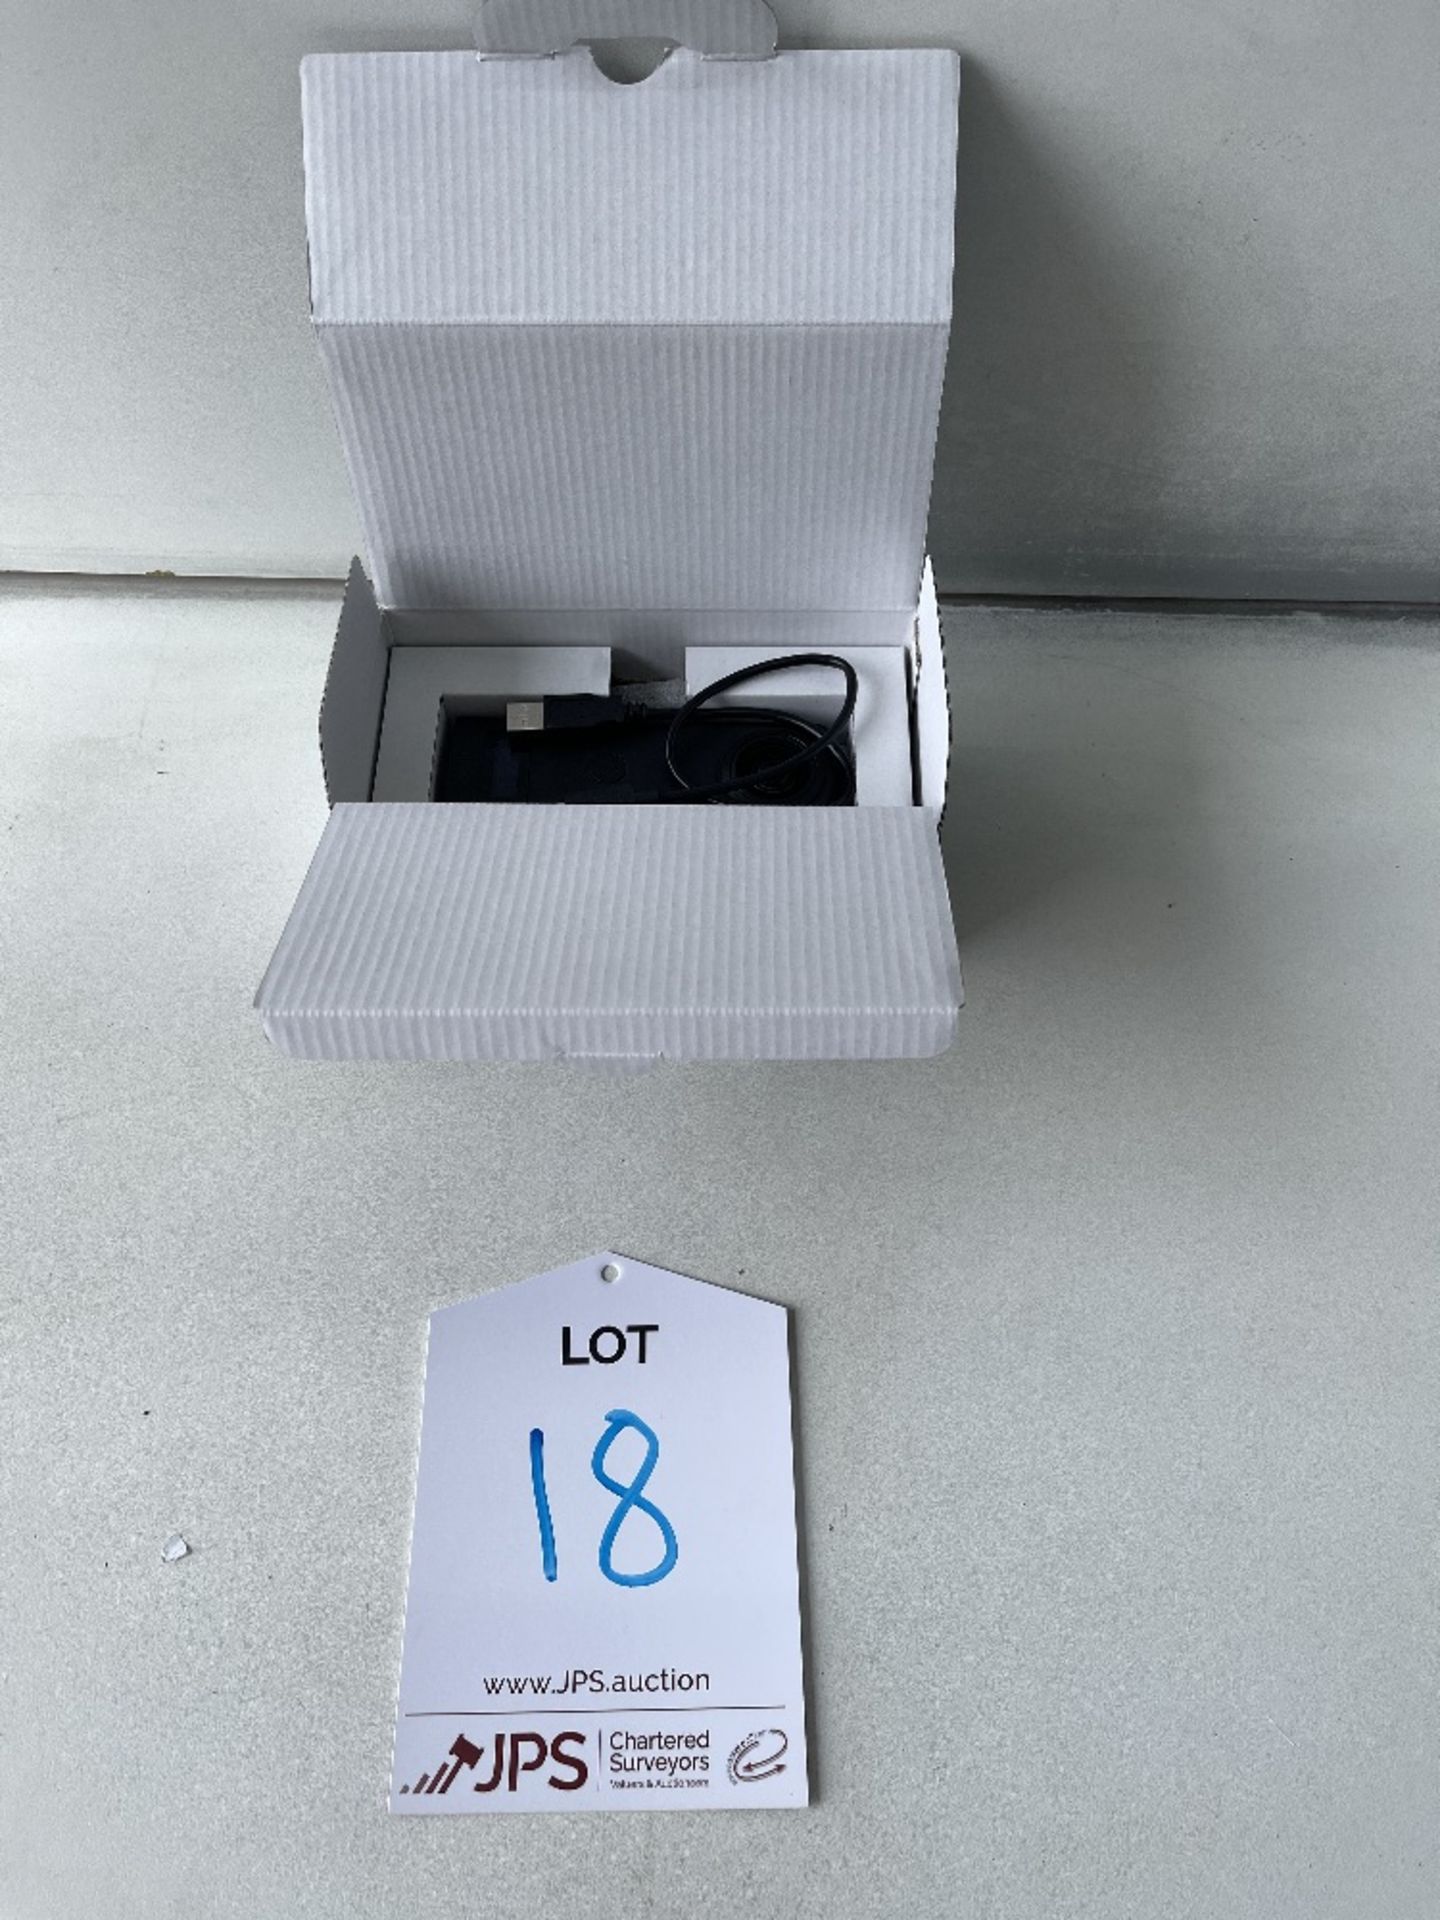 Ricoh Theta Z1 36 degree camera Model R02020 in box - Image 2 of 3